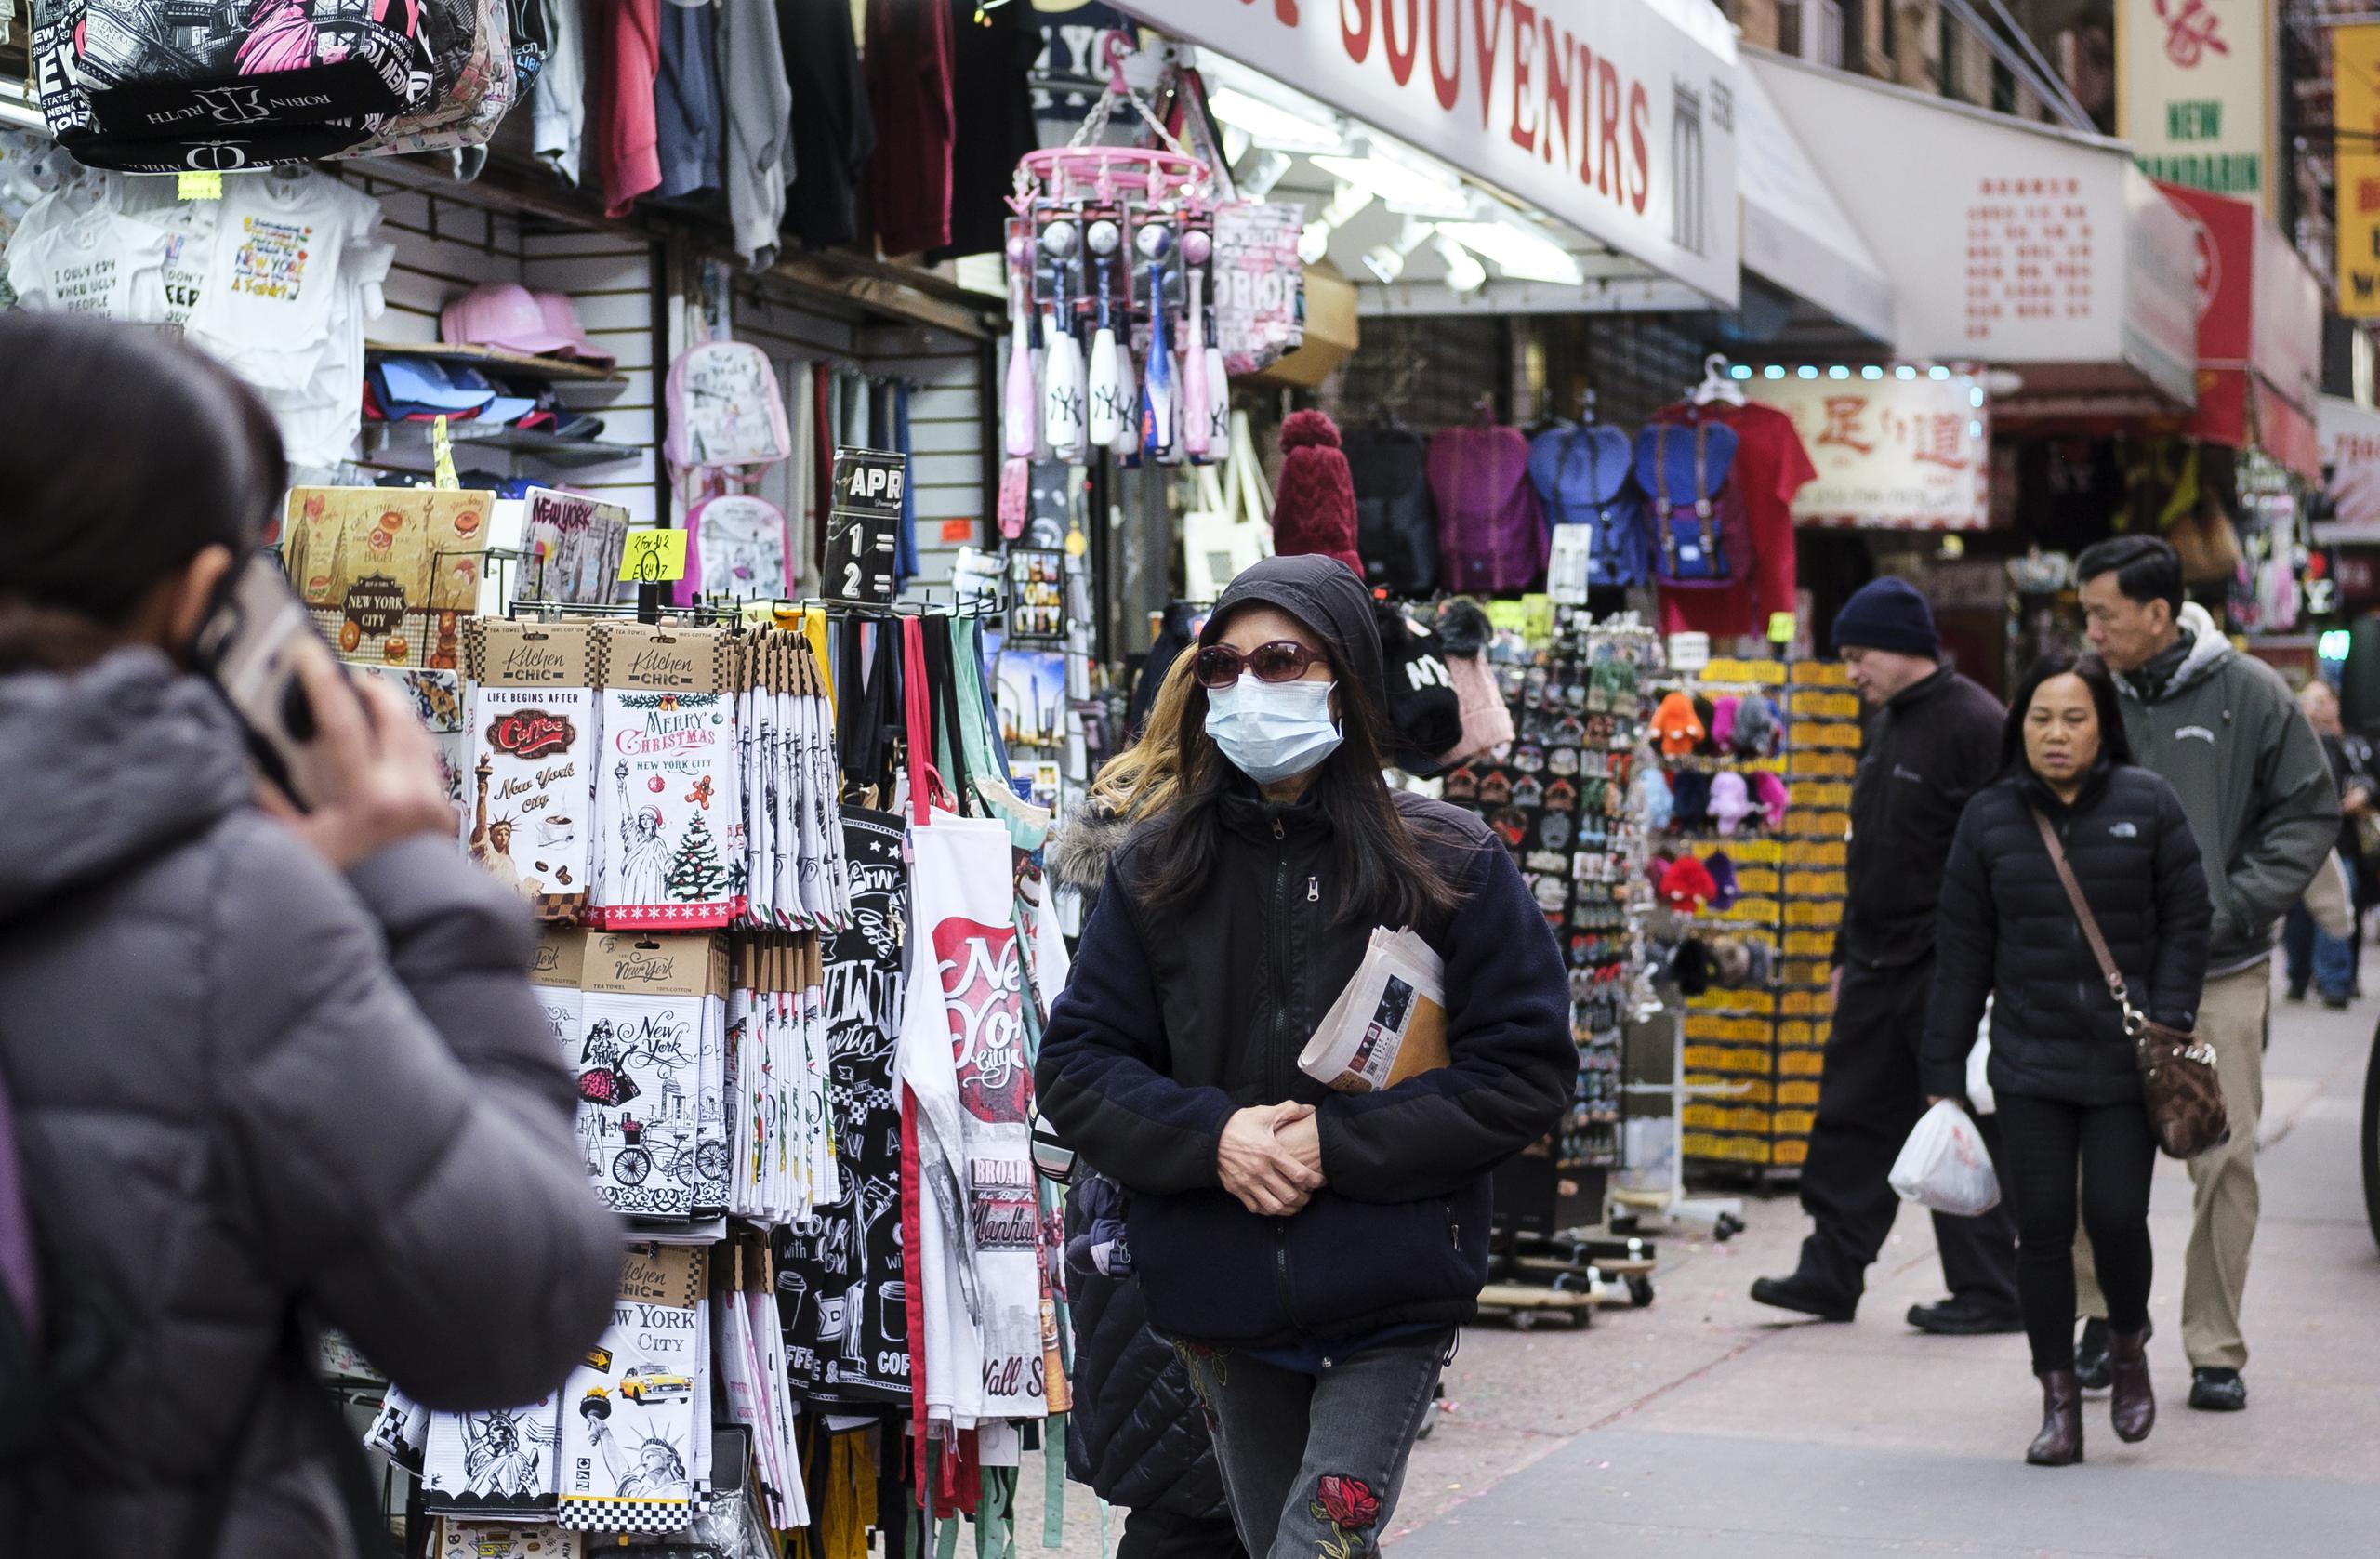 Según datos del NYPD, la ciudad ha pasado de registrar 3 ataques contra estadounidenses asiáticos en 2019 hasta 29 el año pasado, la inmensa mayoría motivados por prejuicios relacionados con la pandemia de covid-19, a la que el expresidente Donald Trump se refirió repetidas veces como el "virus chino".